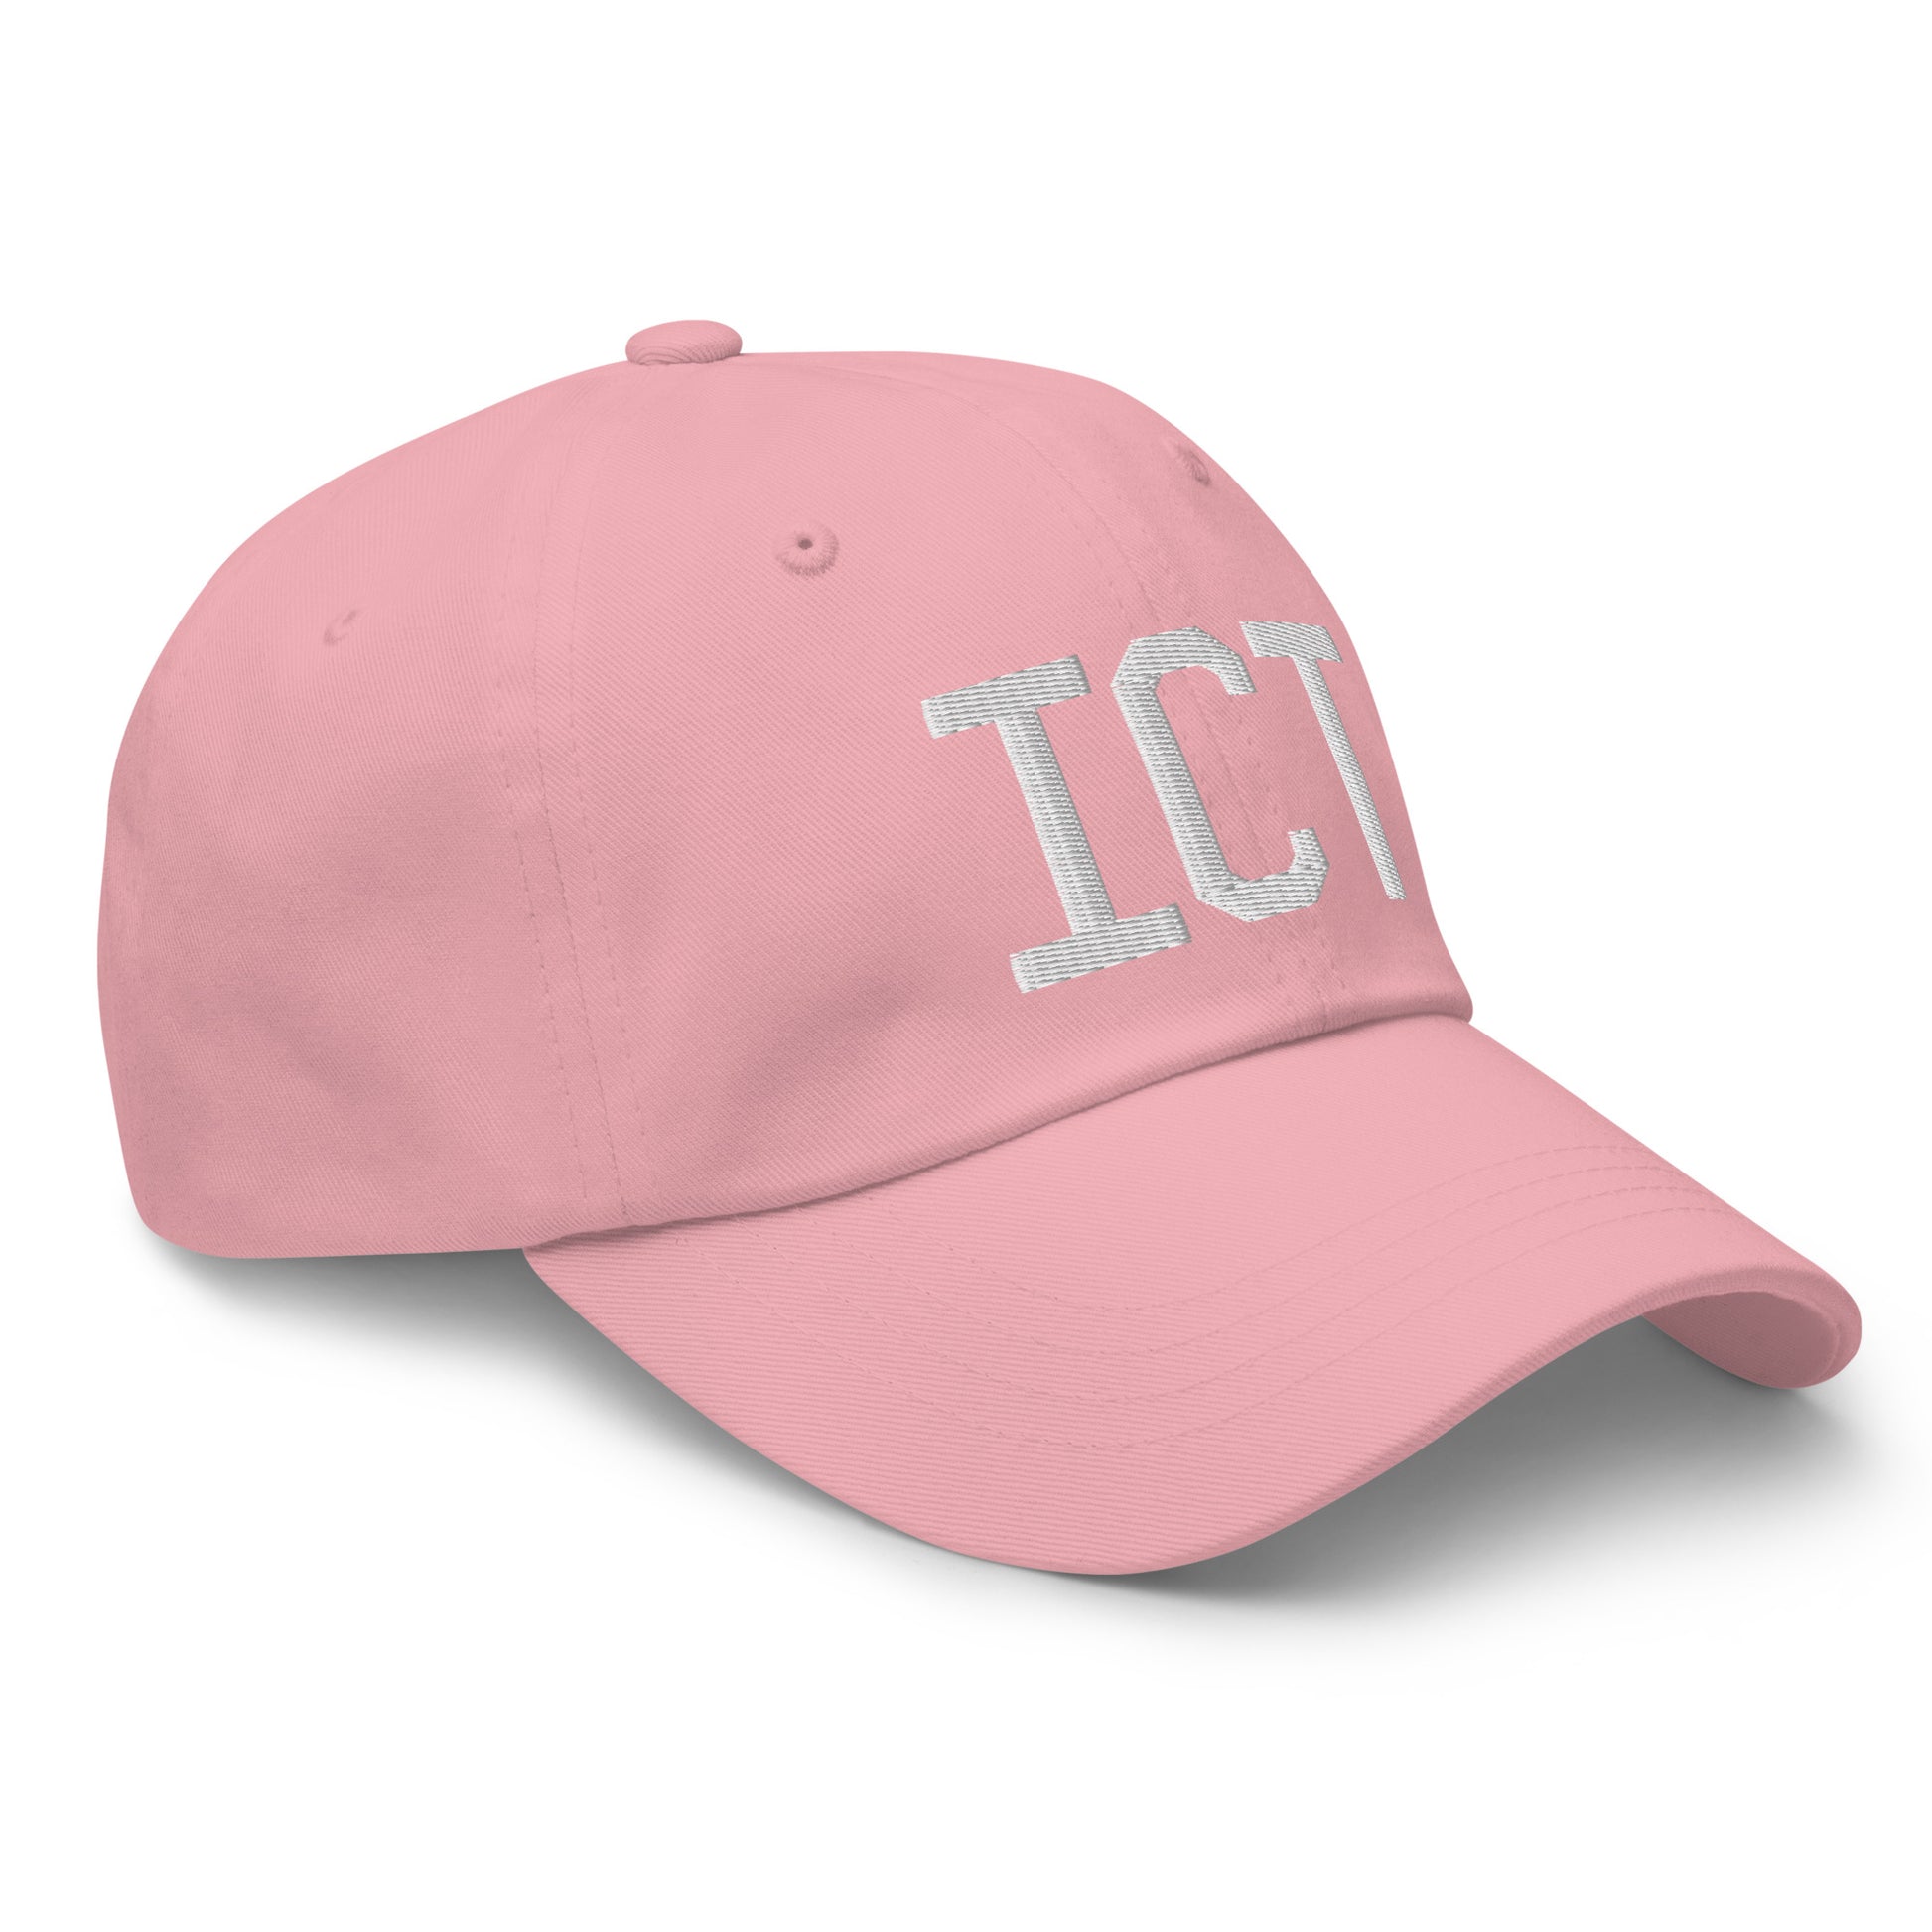 Airport Code Baseball Cap - White • ICT Wichita • YHM Designs - Image 26